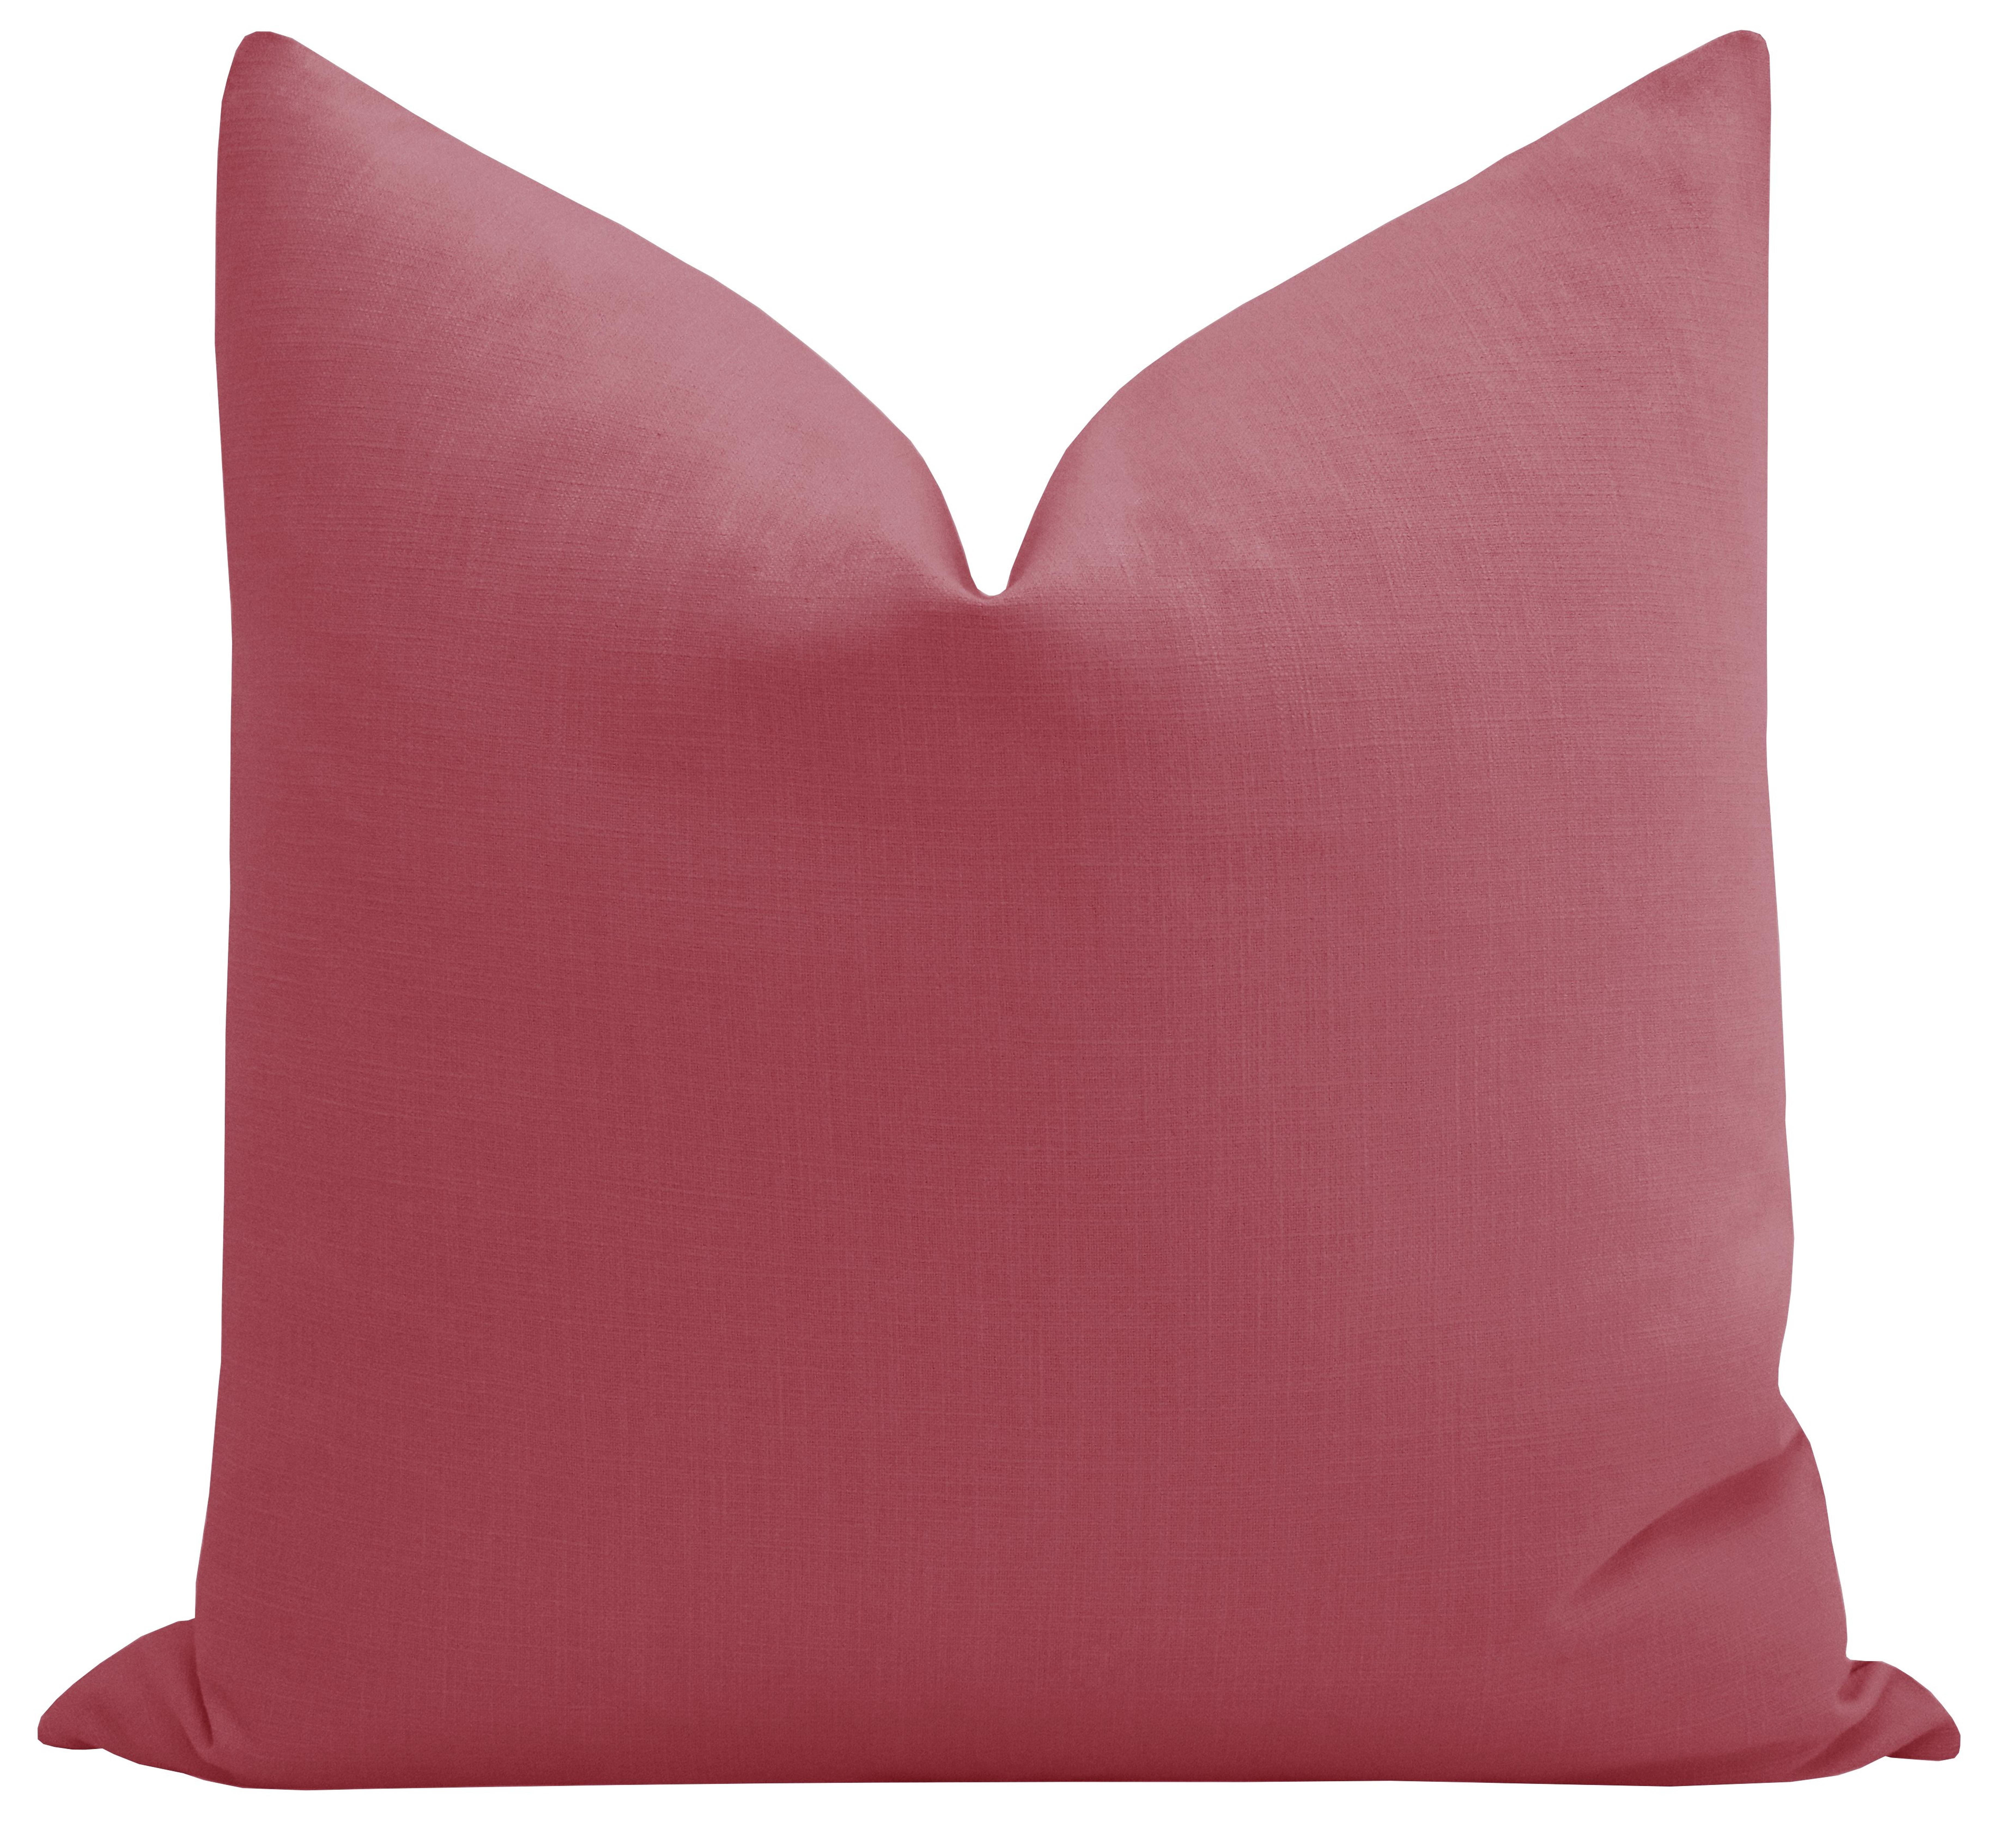 Classic Linen // Rosé Pink - 18" X 18" - Little Design Company